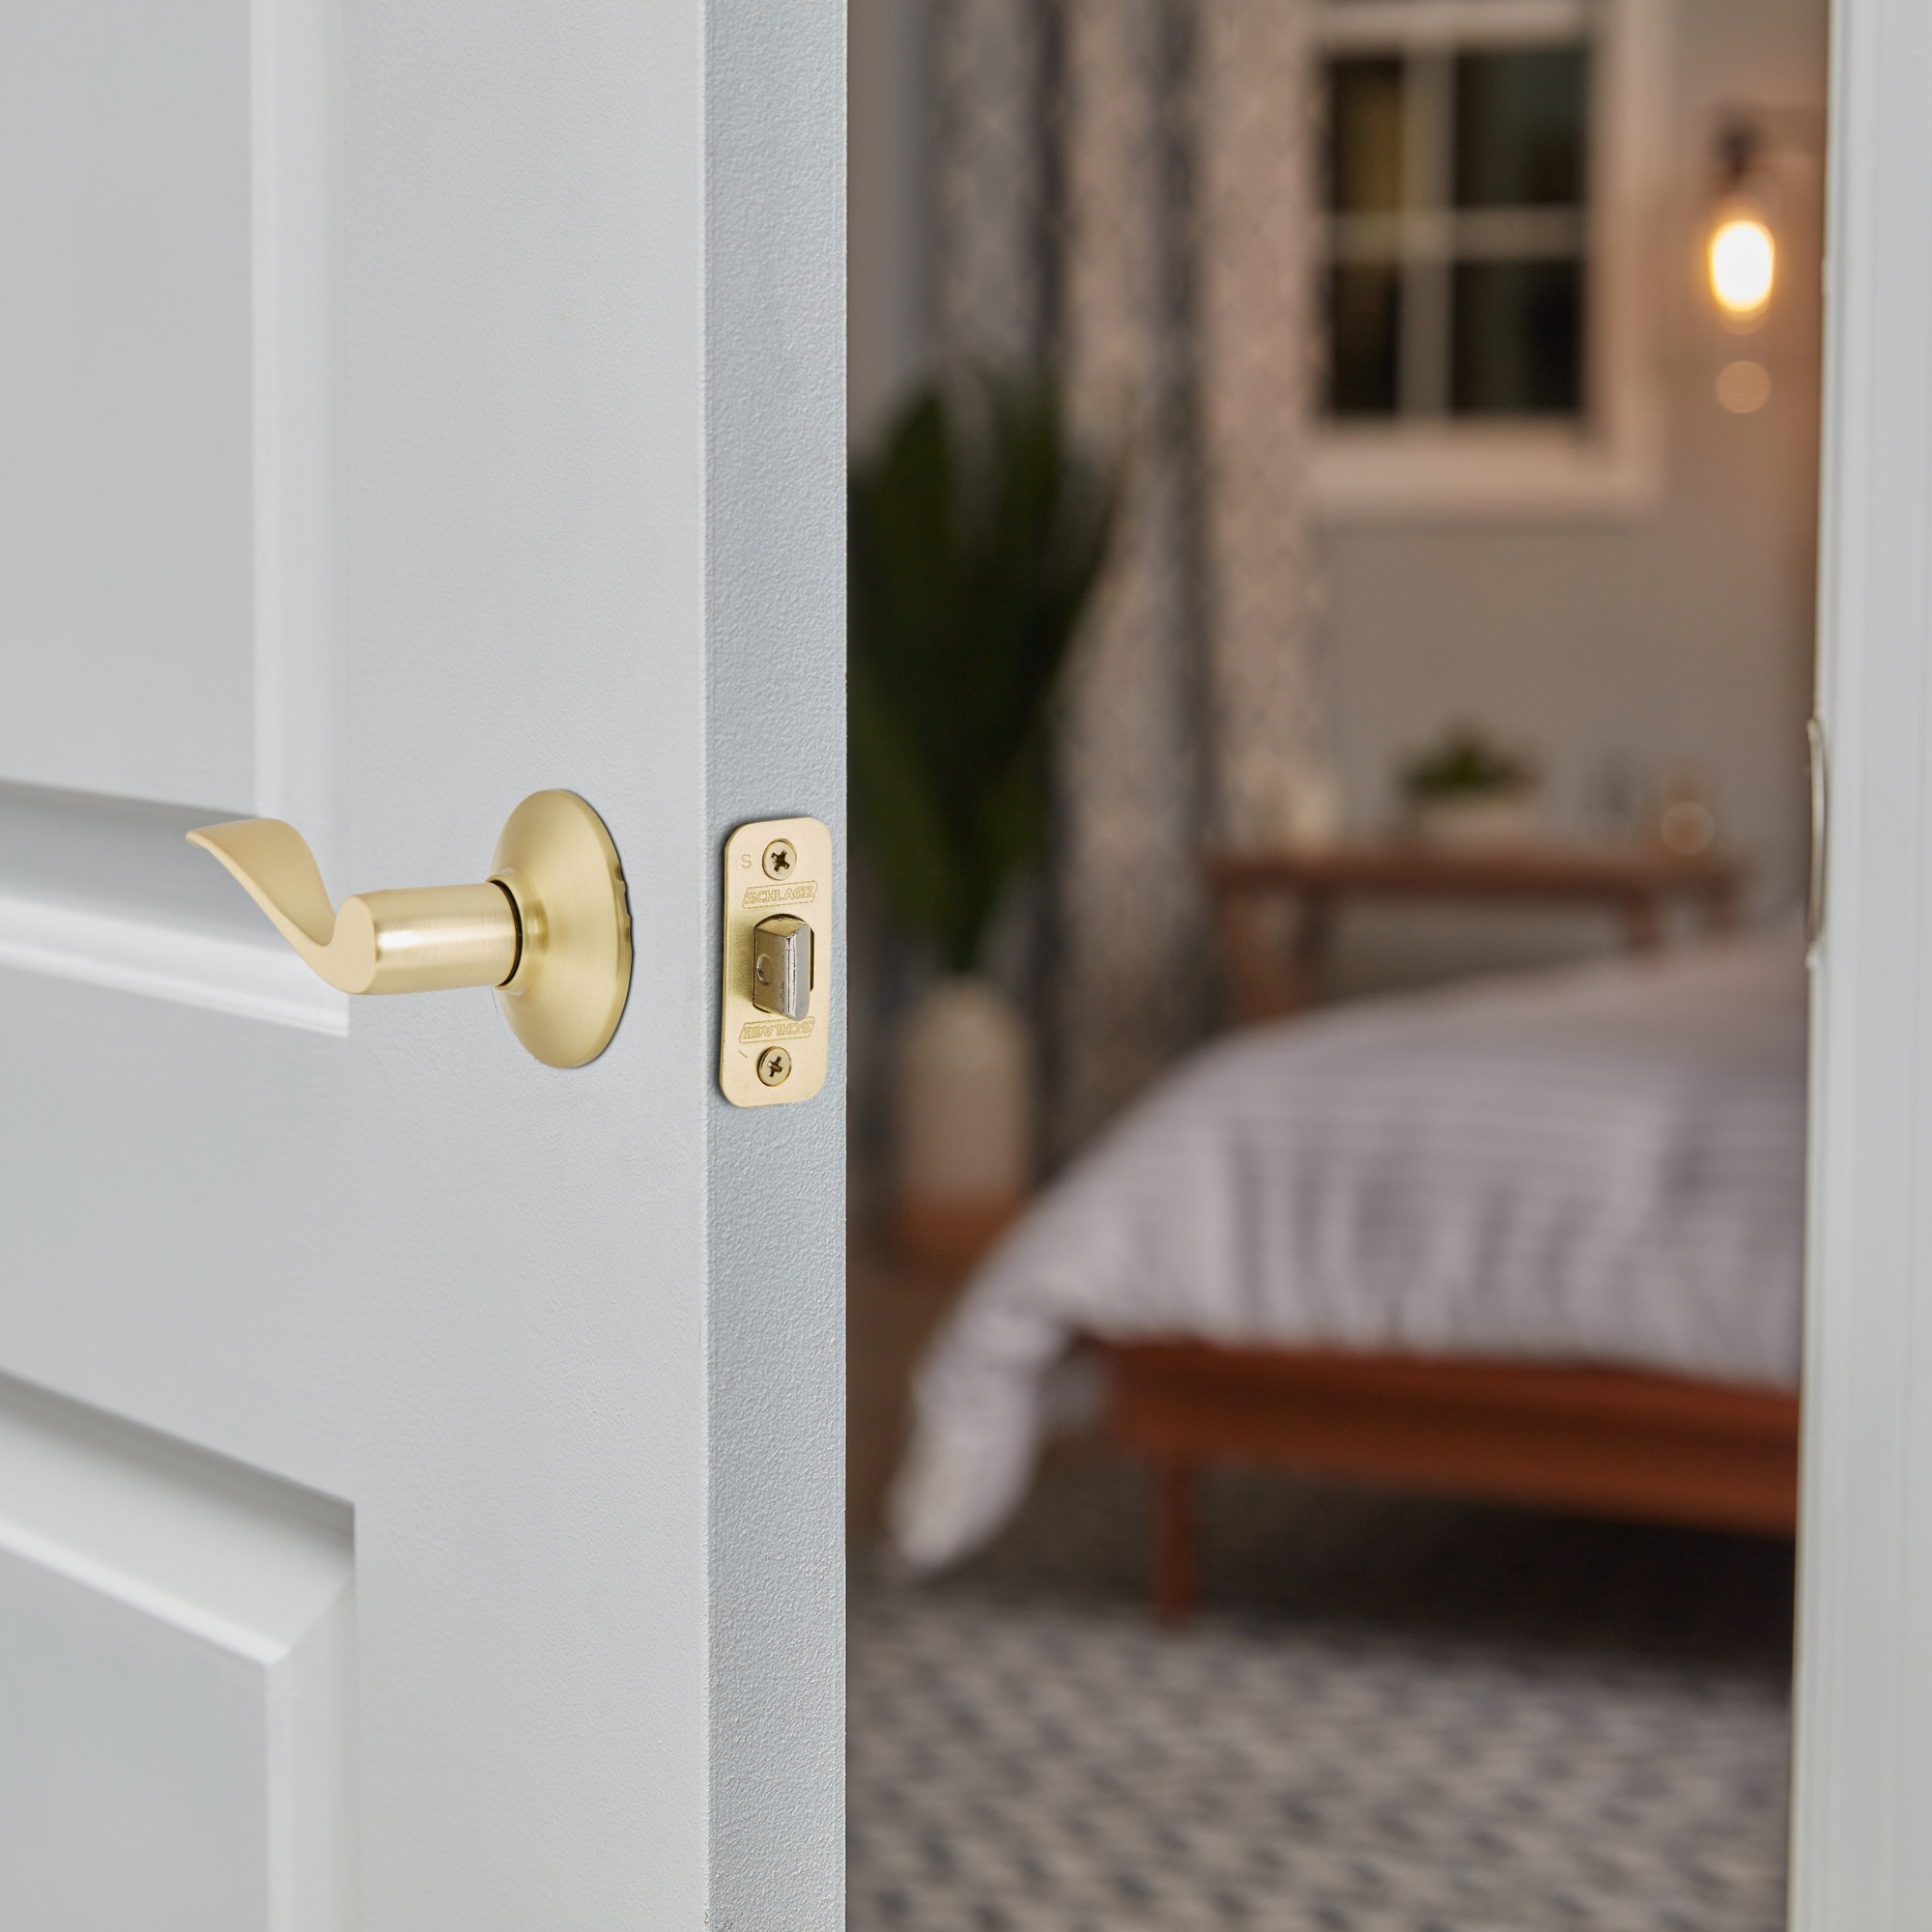 Baldwin Prestige Series Torrey Pines Satin Brass Interior Bed/Bath Privacy Door  Handle in the Door Handles department at